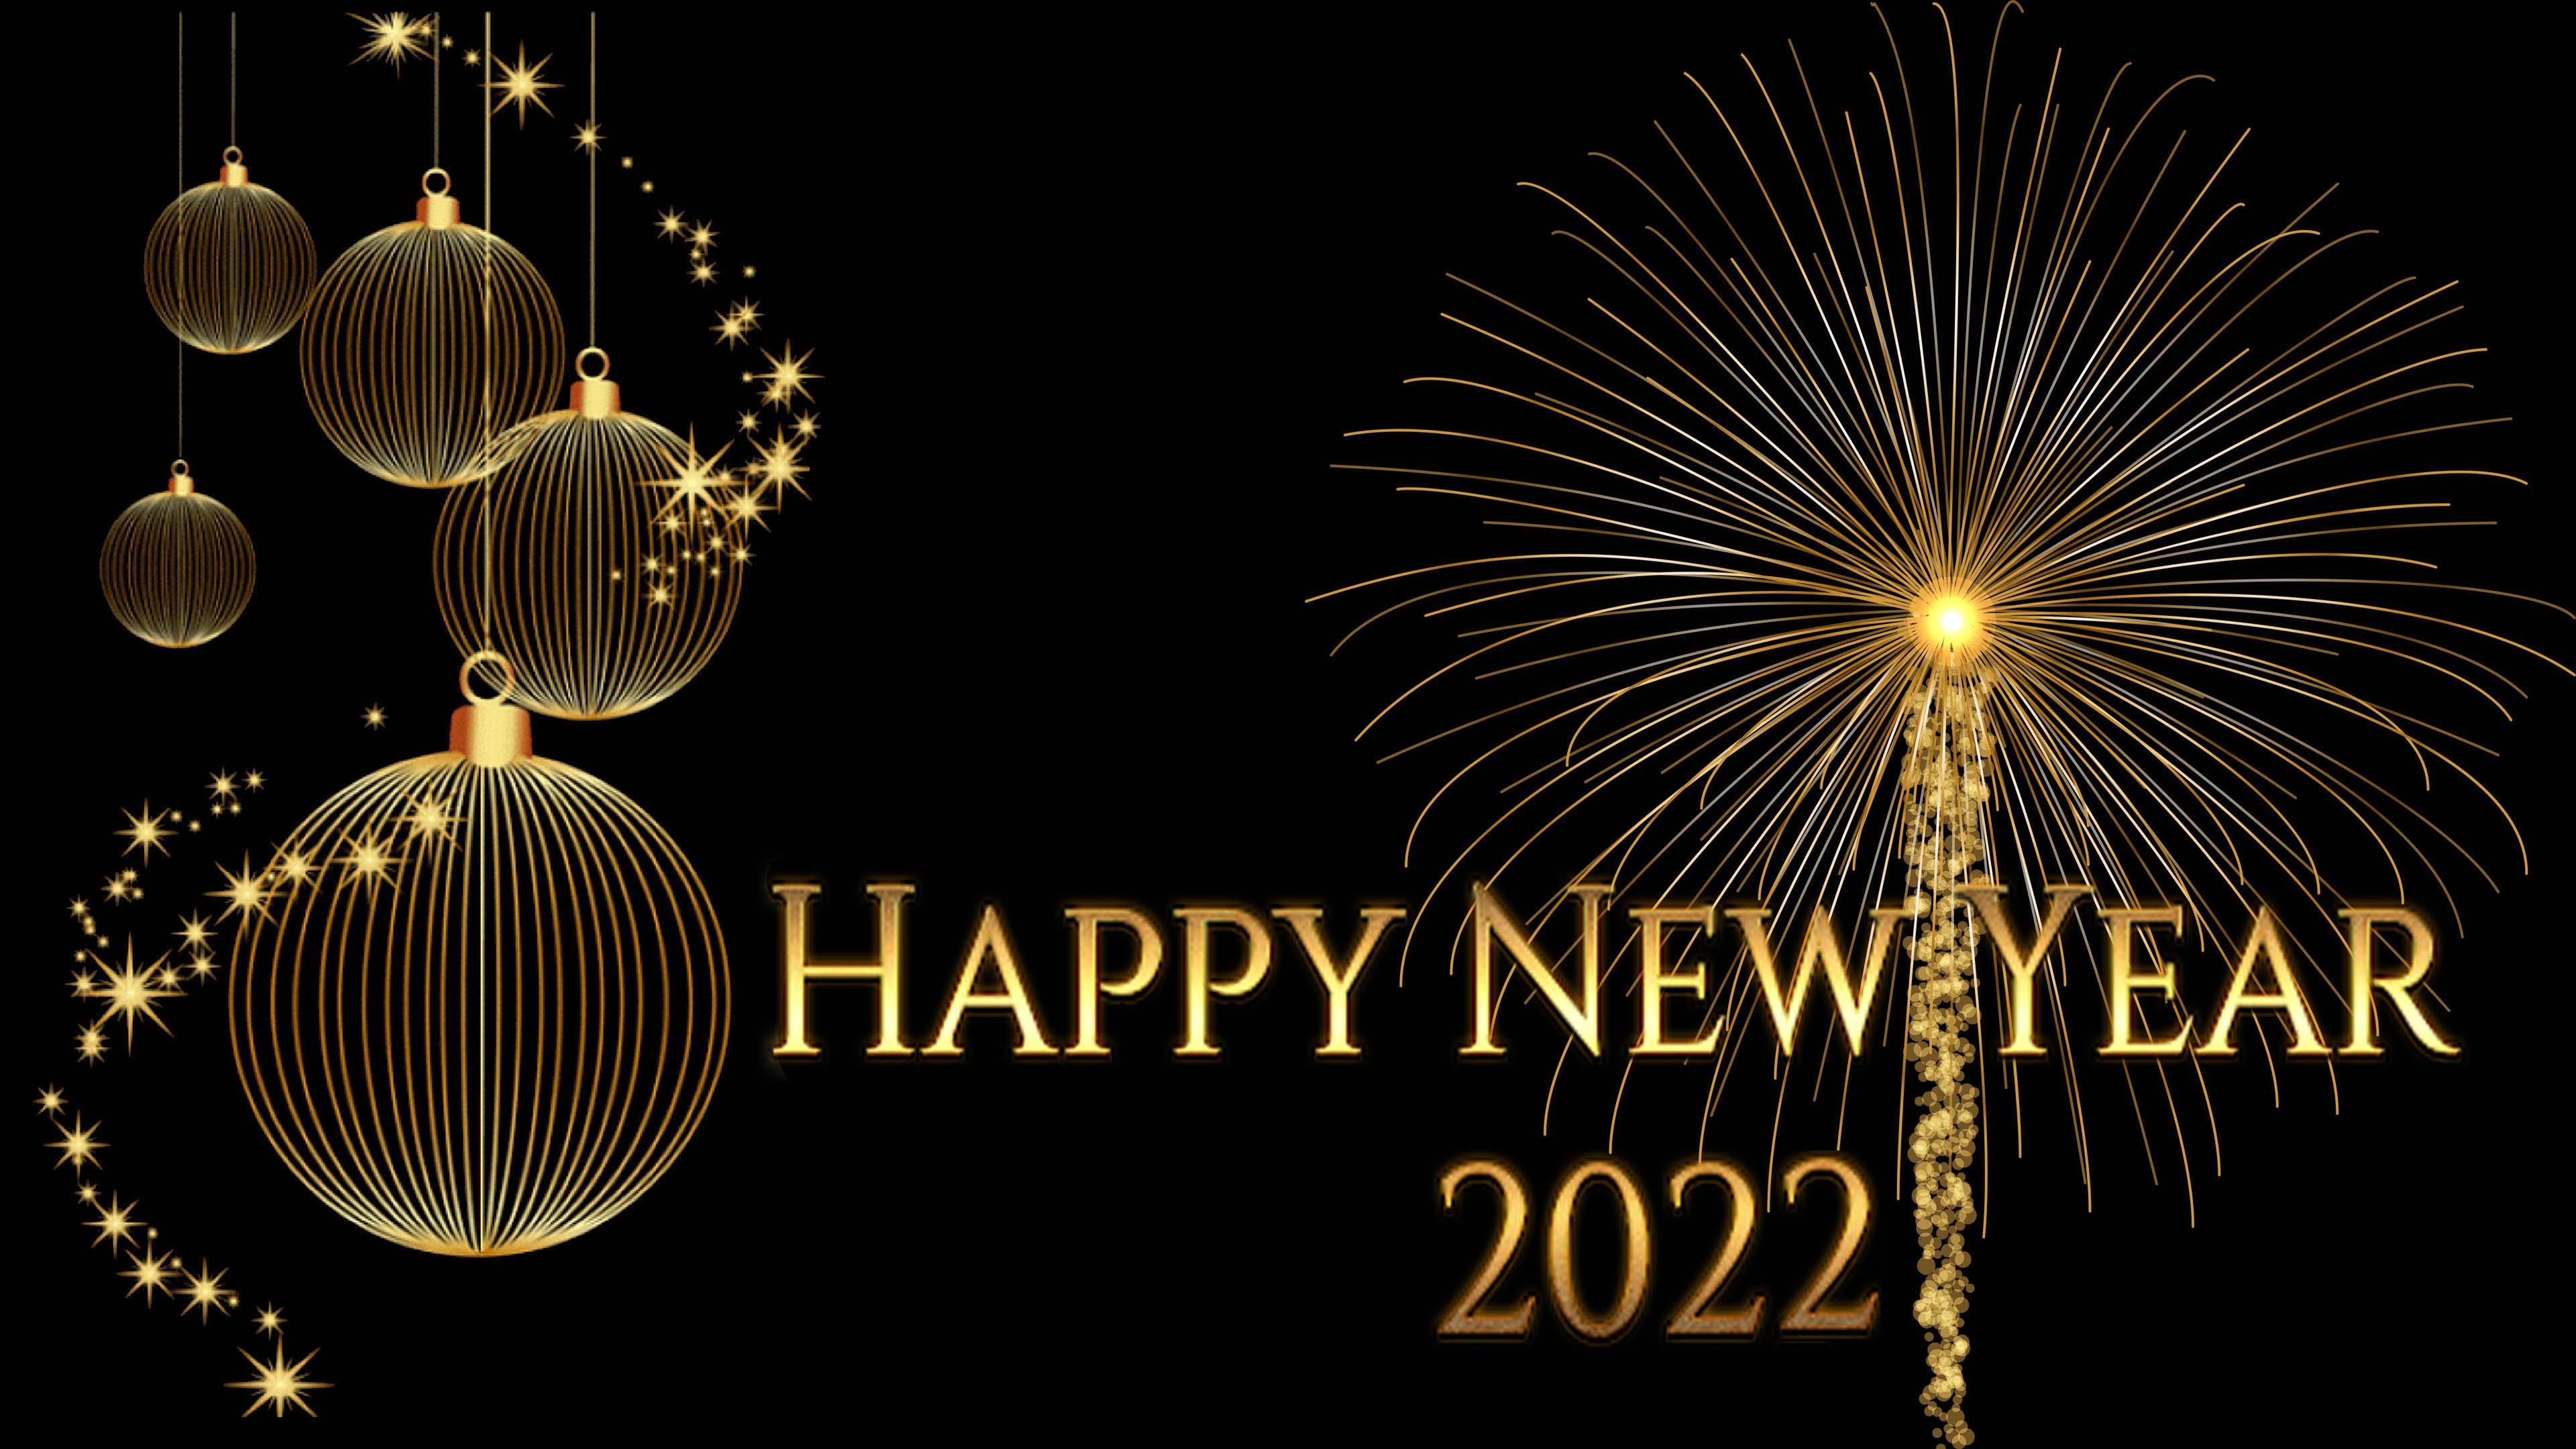 Thiệp mừng năm mới 2022 đẹp nhất